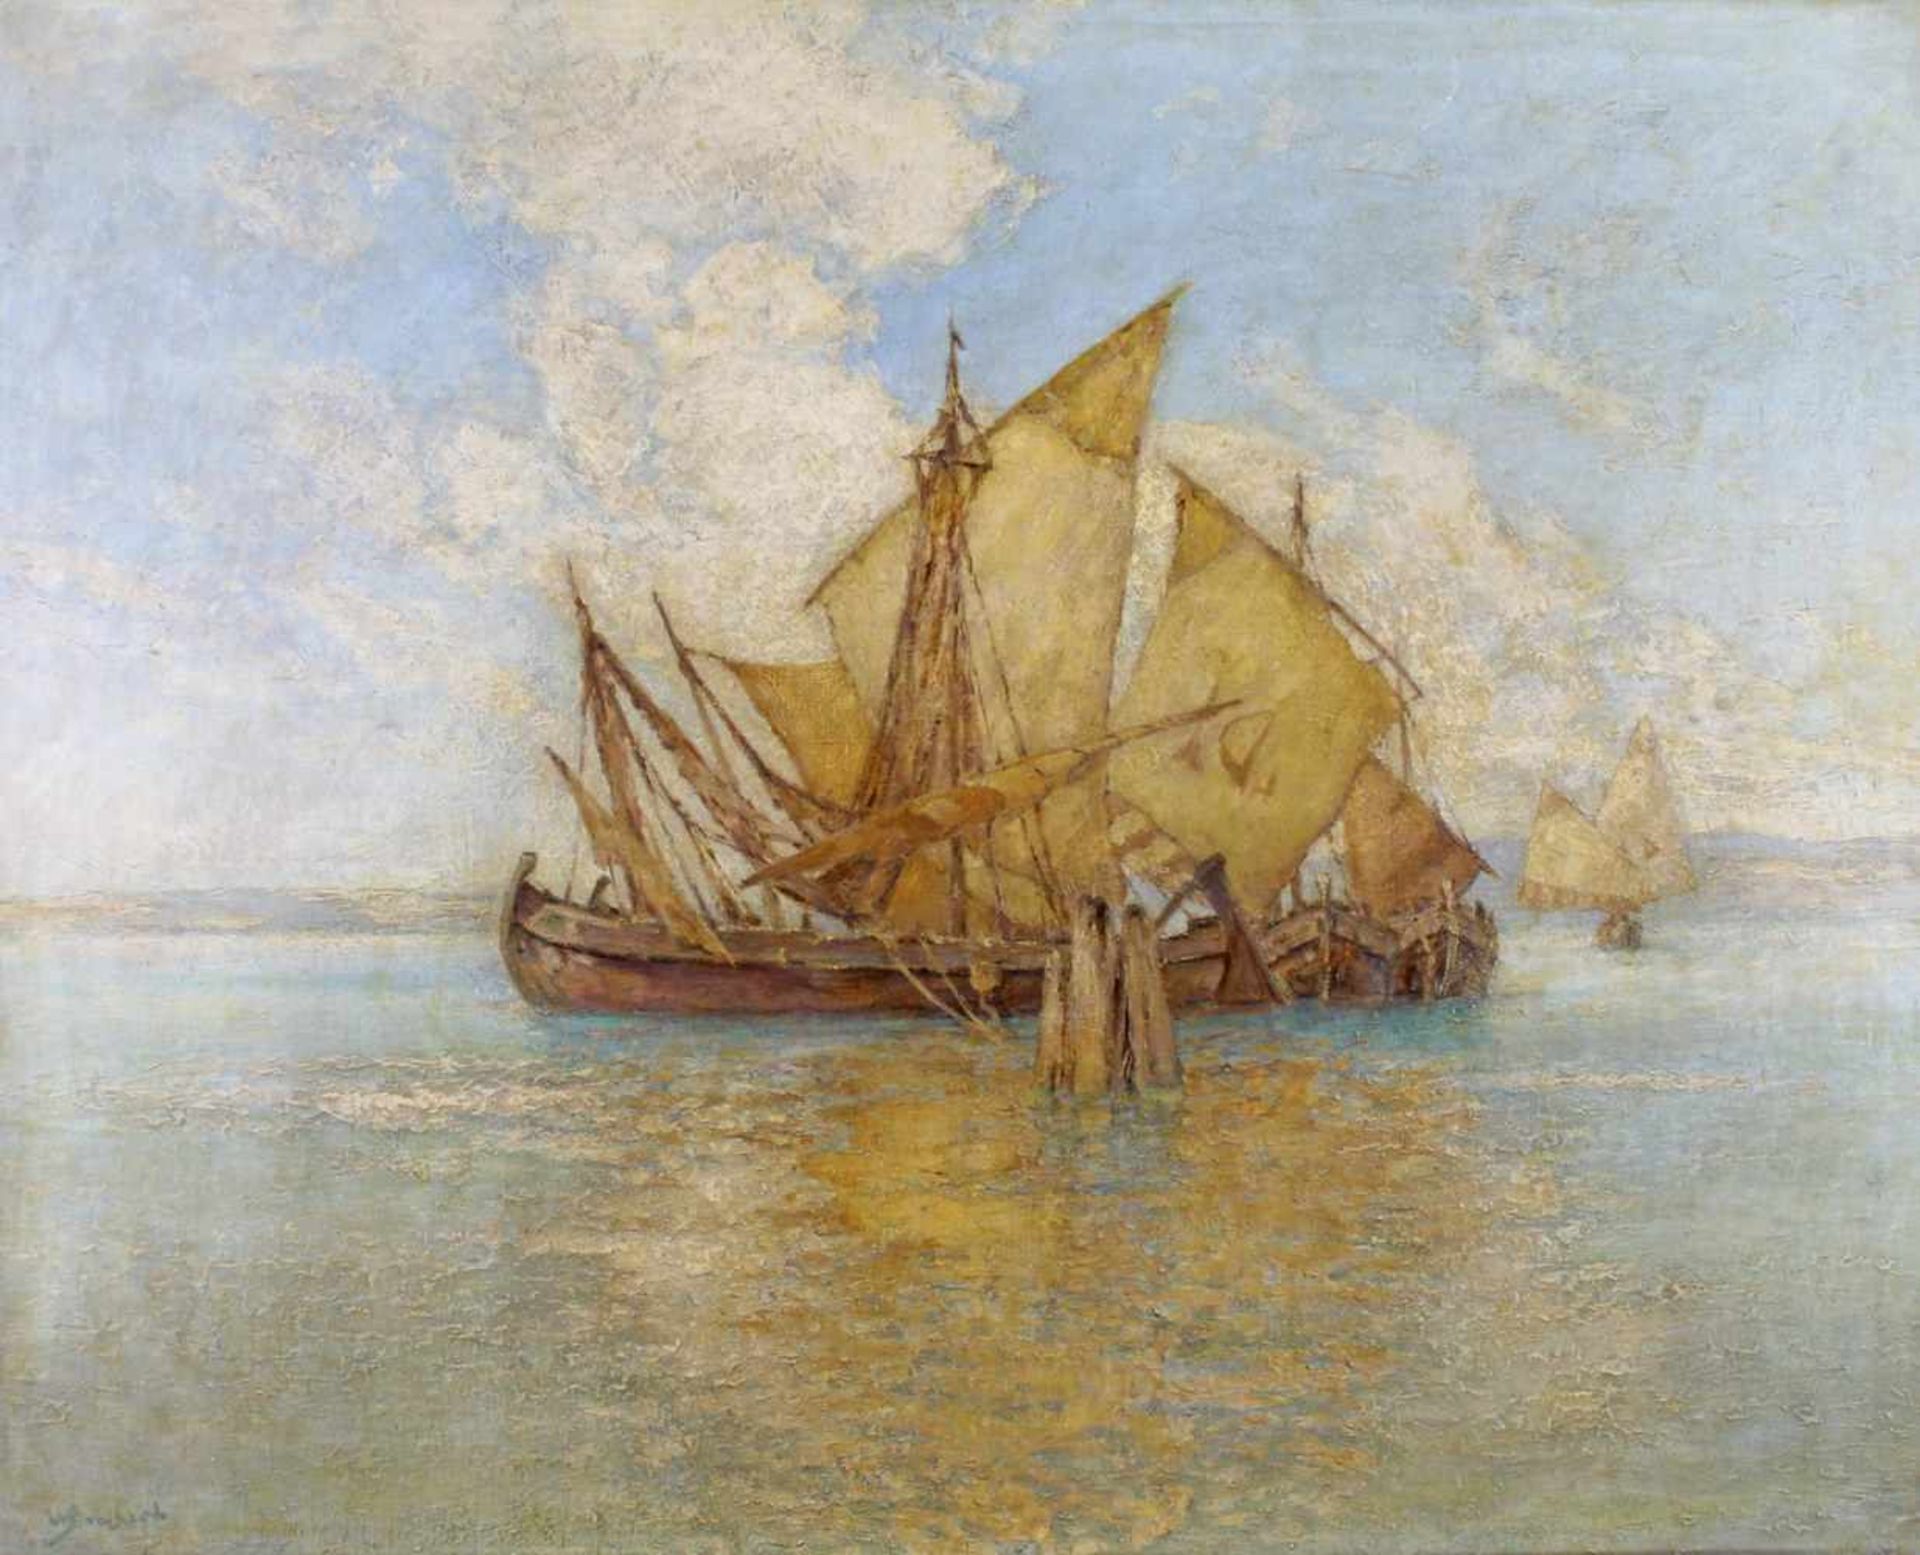 Bombach, Wilhelm (1855 Berlin - 1946, Landschaftsmaler), "Segelboote vor der Küste", Öl auf